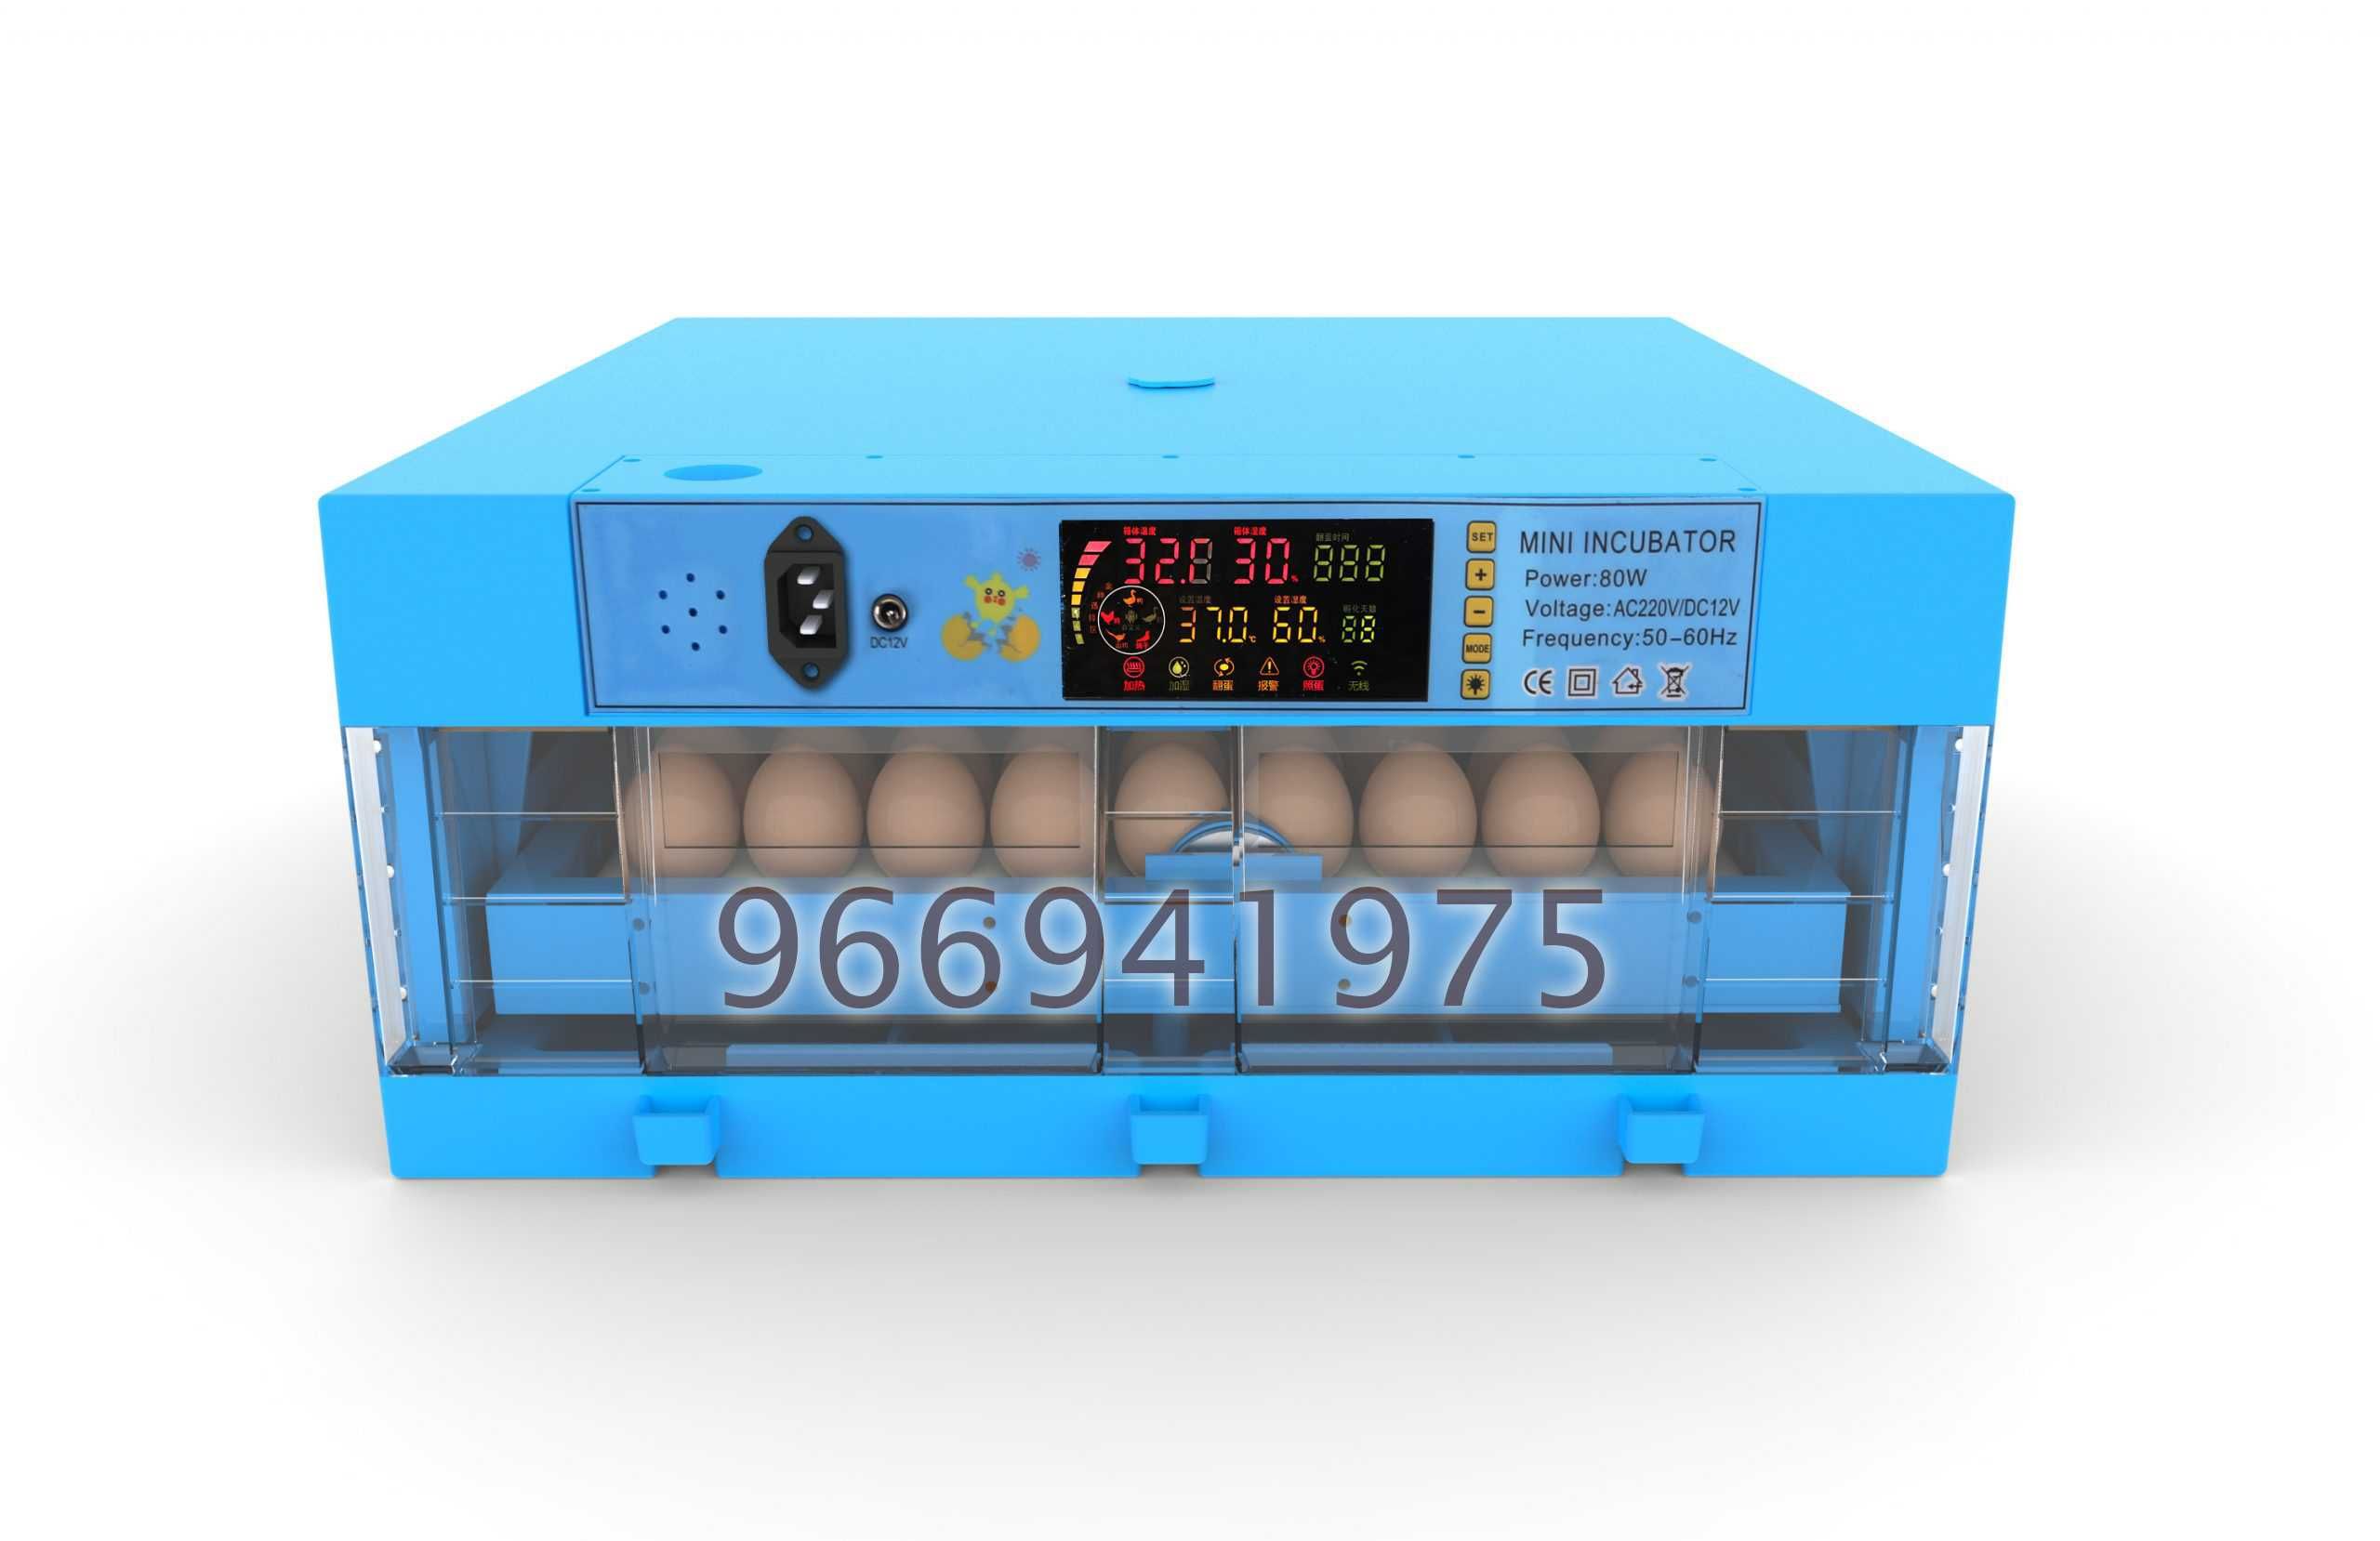 Incubadora/Chocadeira automática 144 ovos de codorniz ou perdiz